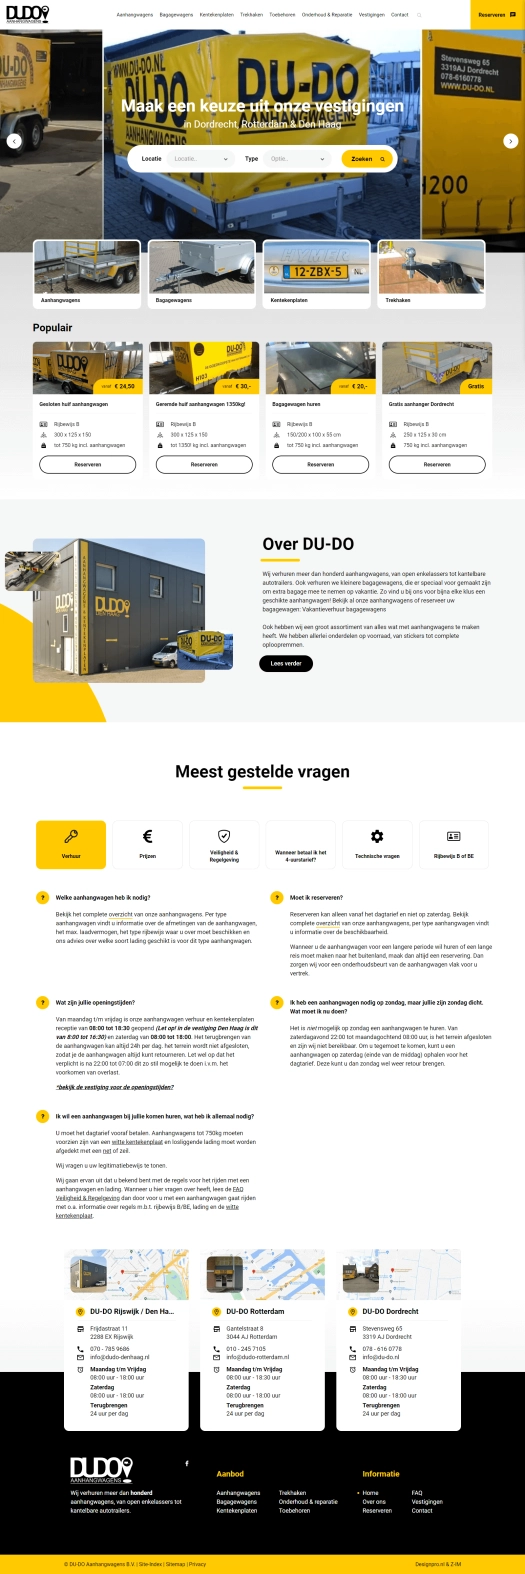 DU-DO Aanhangwagens desktop website